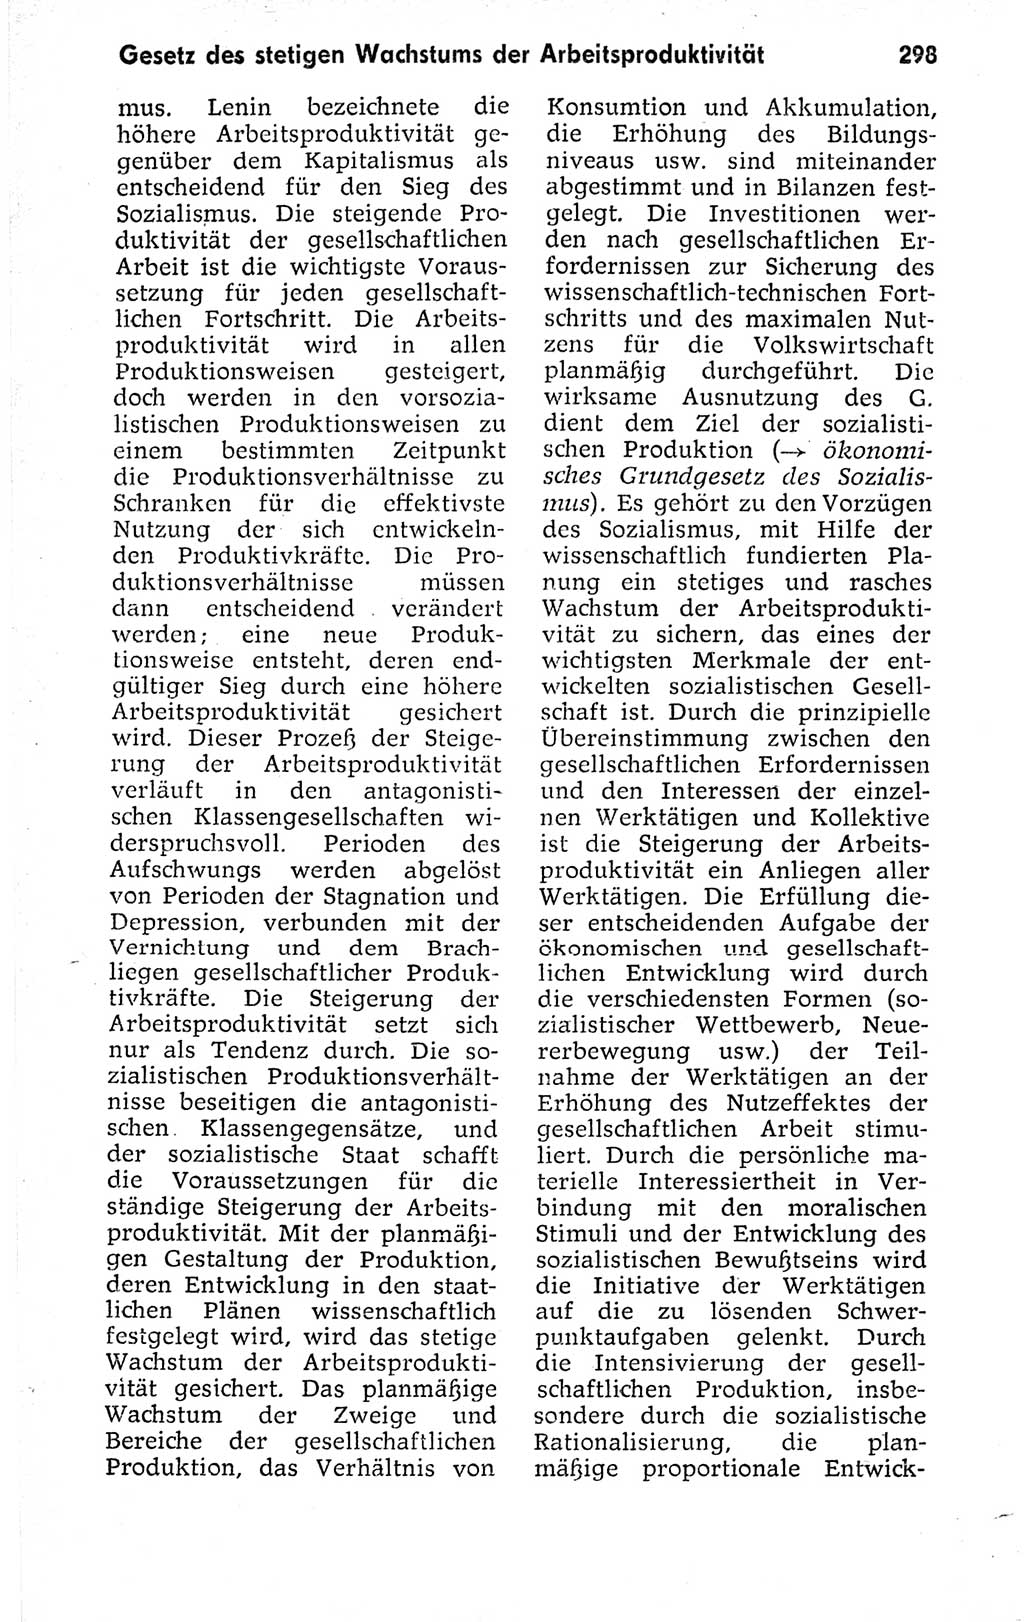 Kleines politisches Wörterbuch [Deutsche Demokratische Republik (DDR)] 1973, Seite 298 (Kl. pol. Wb. DDR 1973, S. 298)